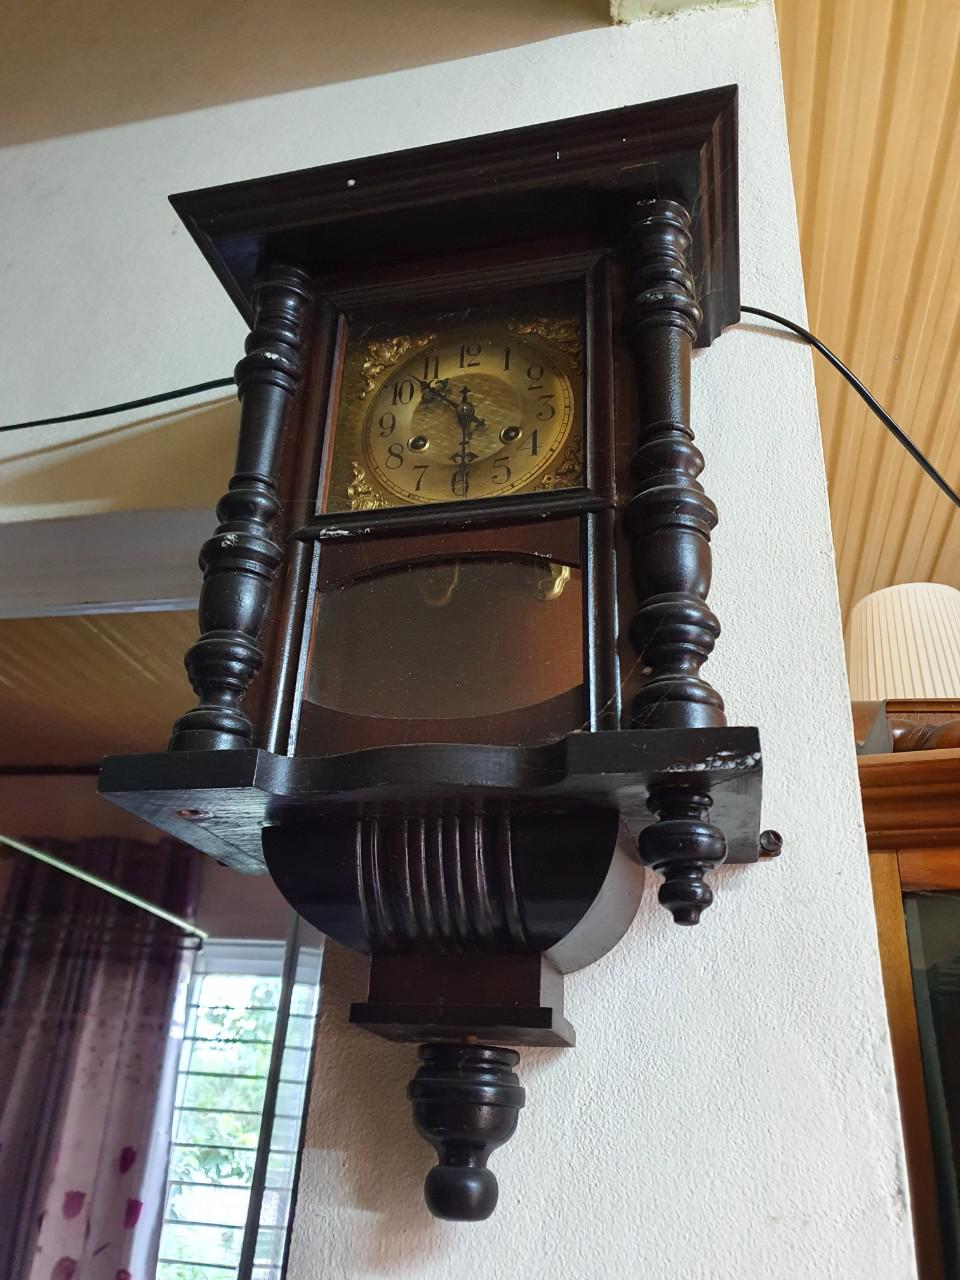 Mua đồng hồ ở Quảng Bình - Cửa hàng đồng hồ Vũ Anh Watch